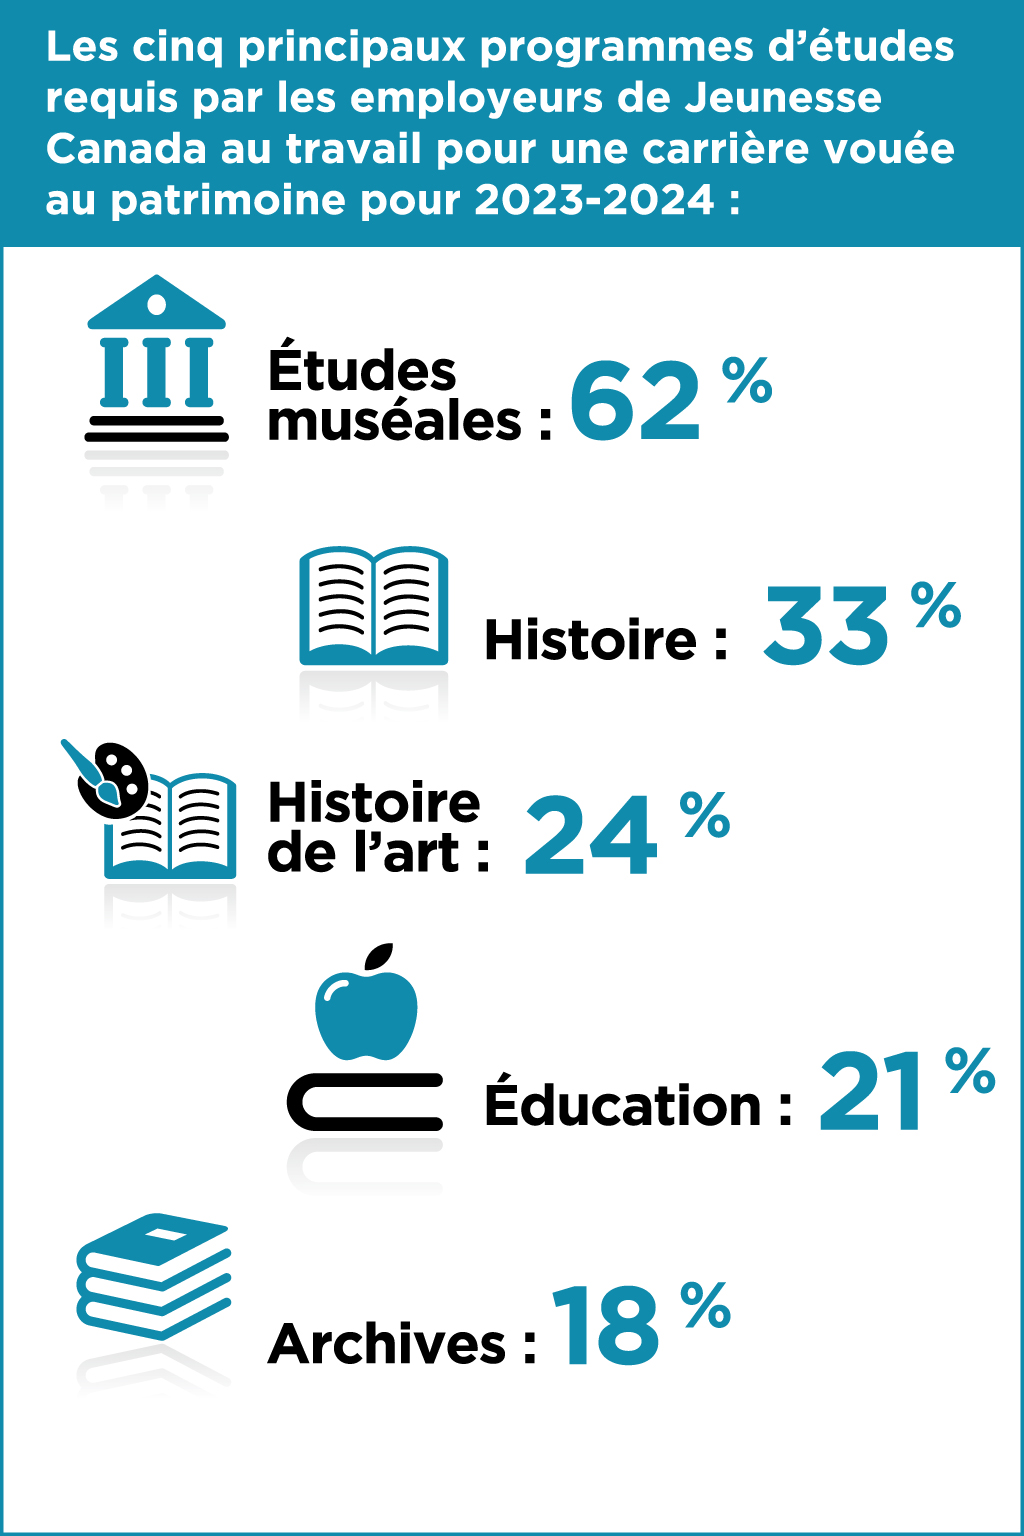 Les cinq principaux programmes d’études  requis par les employeurs  de Jeunesse Canada au travail pour une carrière vouée au patrimoine pour 2023-2024 